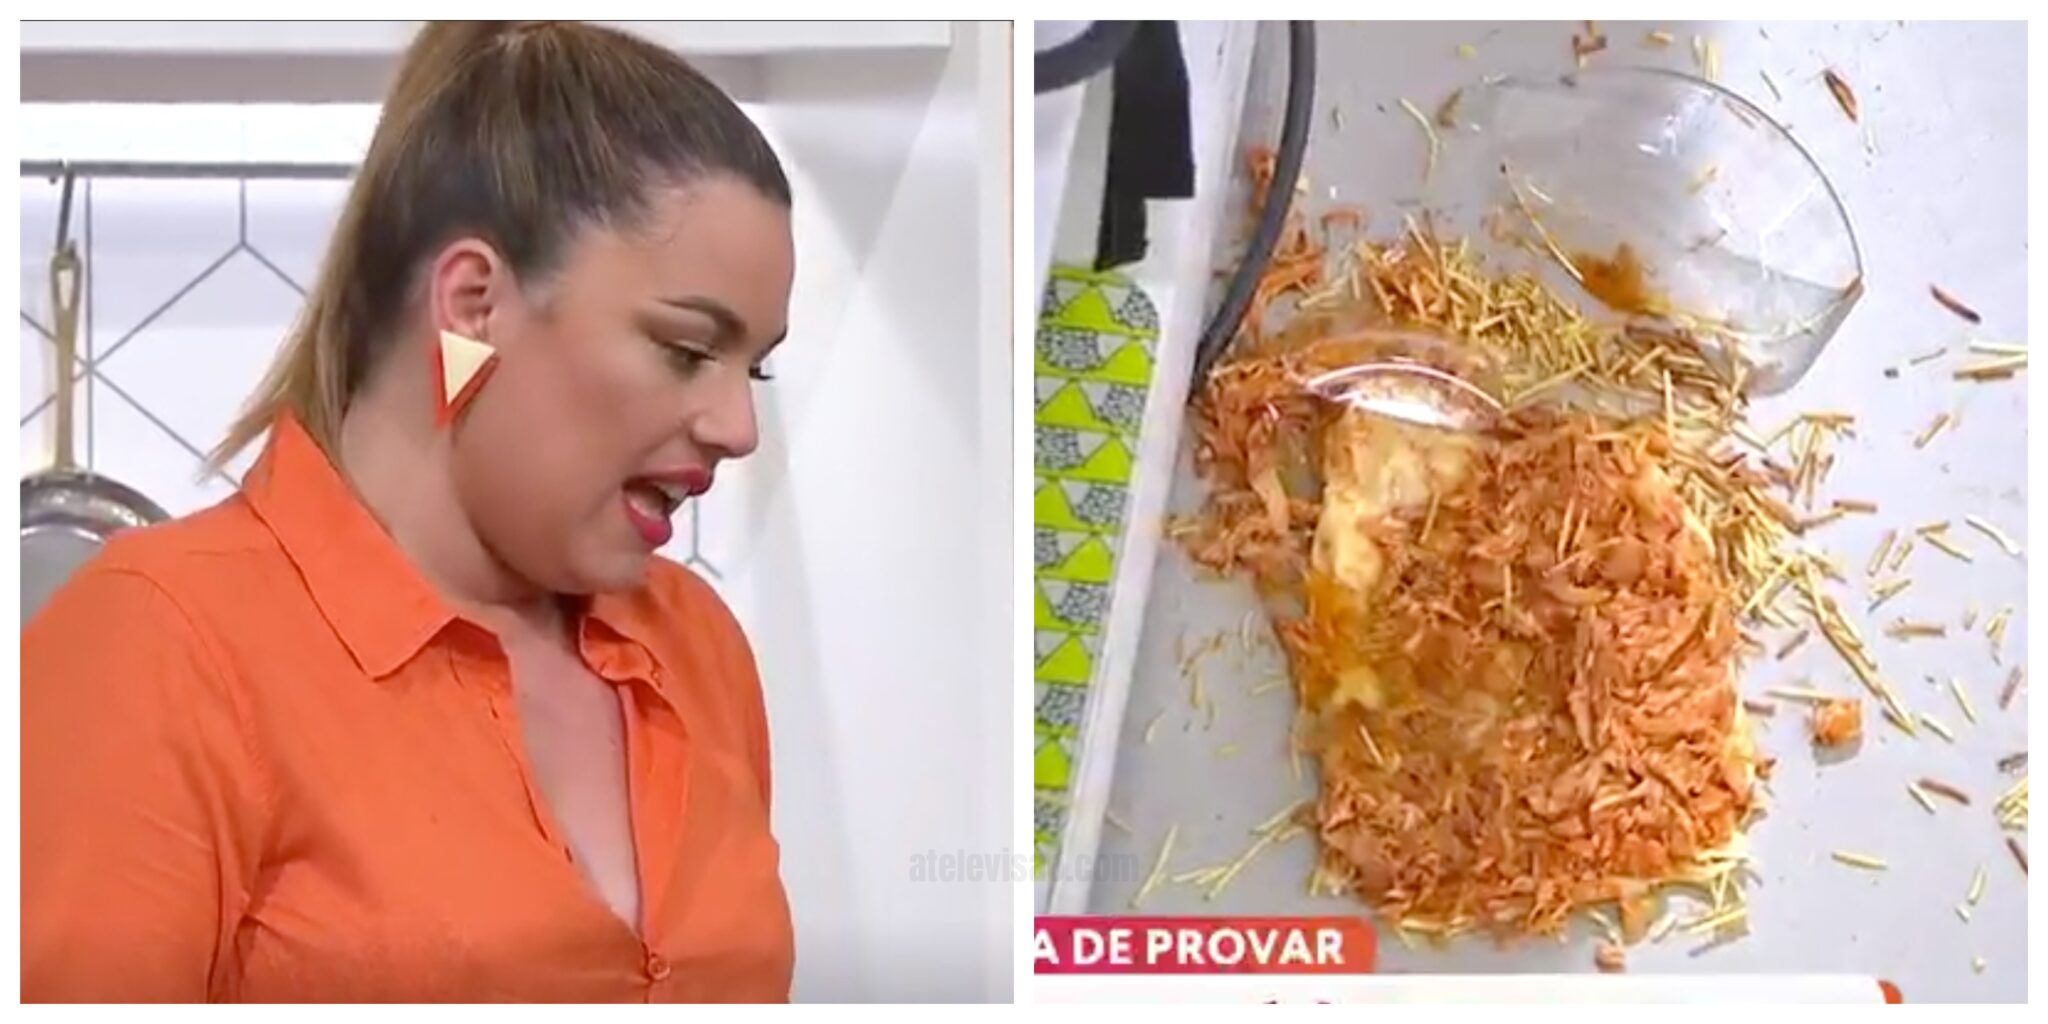 ana guiomar prato scaled Ana Guiomar cozinha no 'Você na TV' e deixa cair prato no chão: "Estou cheia de vergonha!"